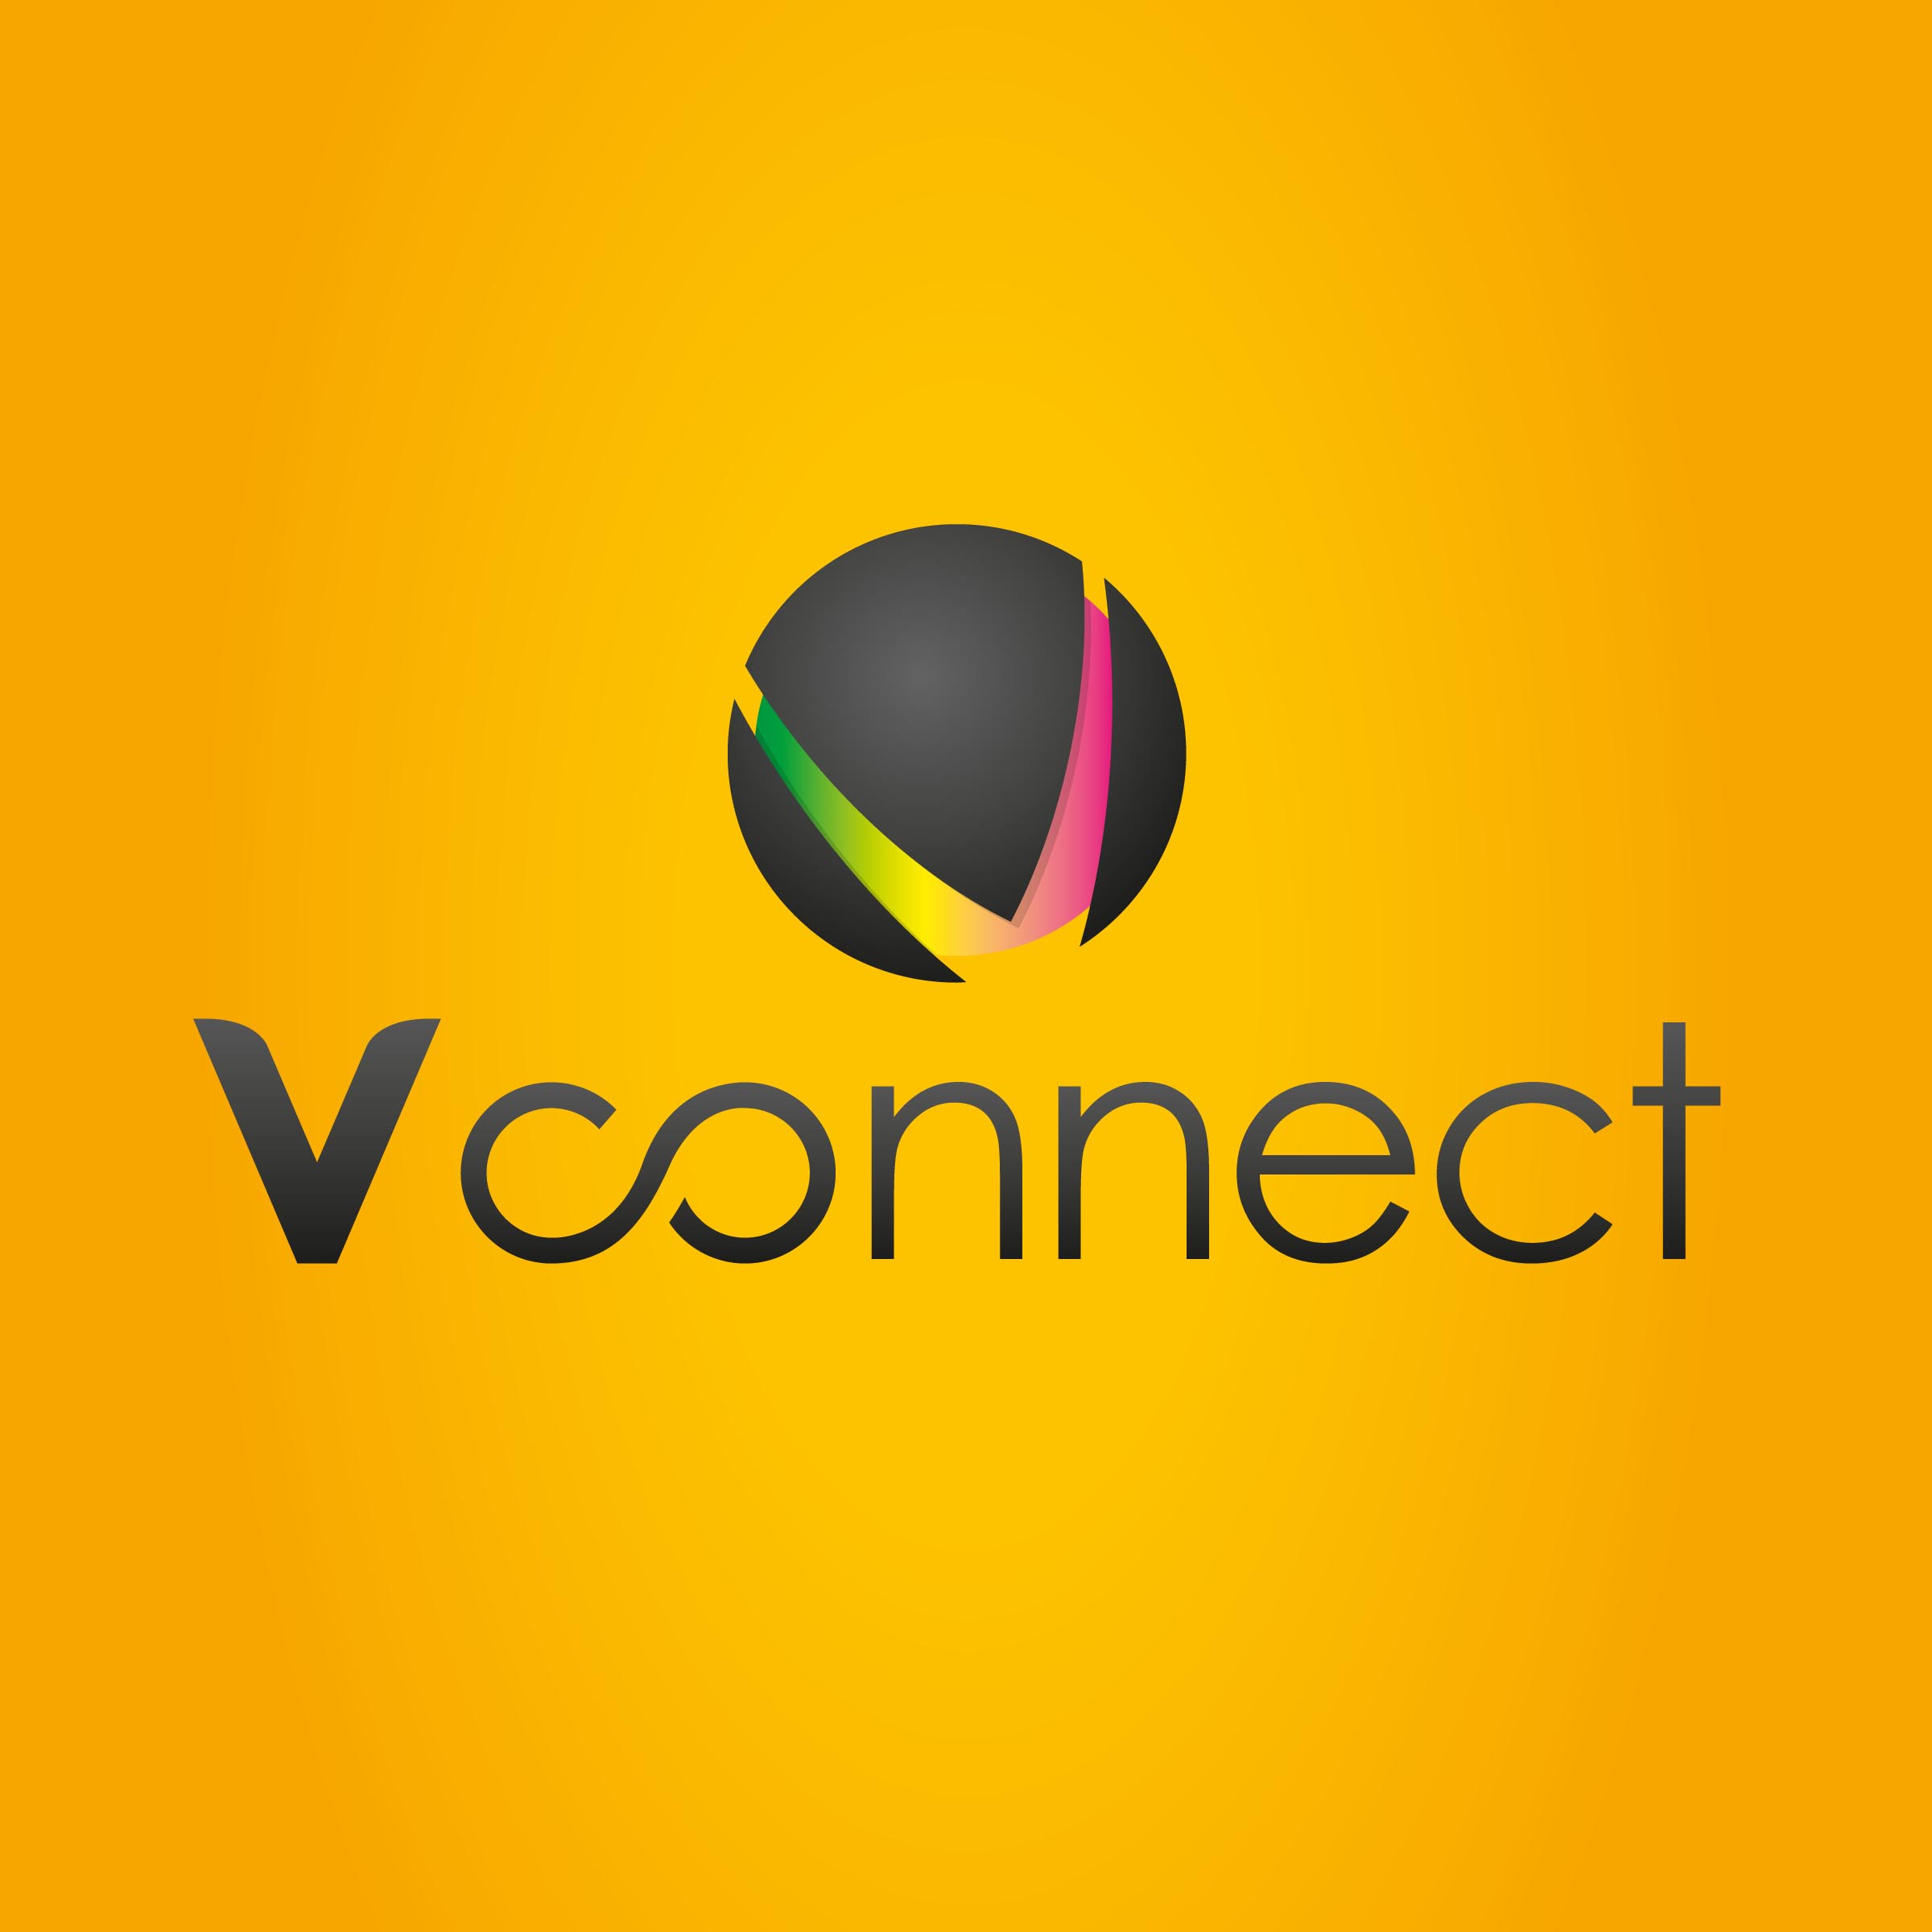 Vconnect Digital